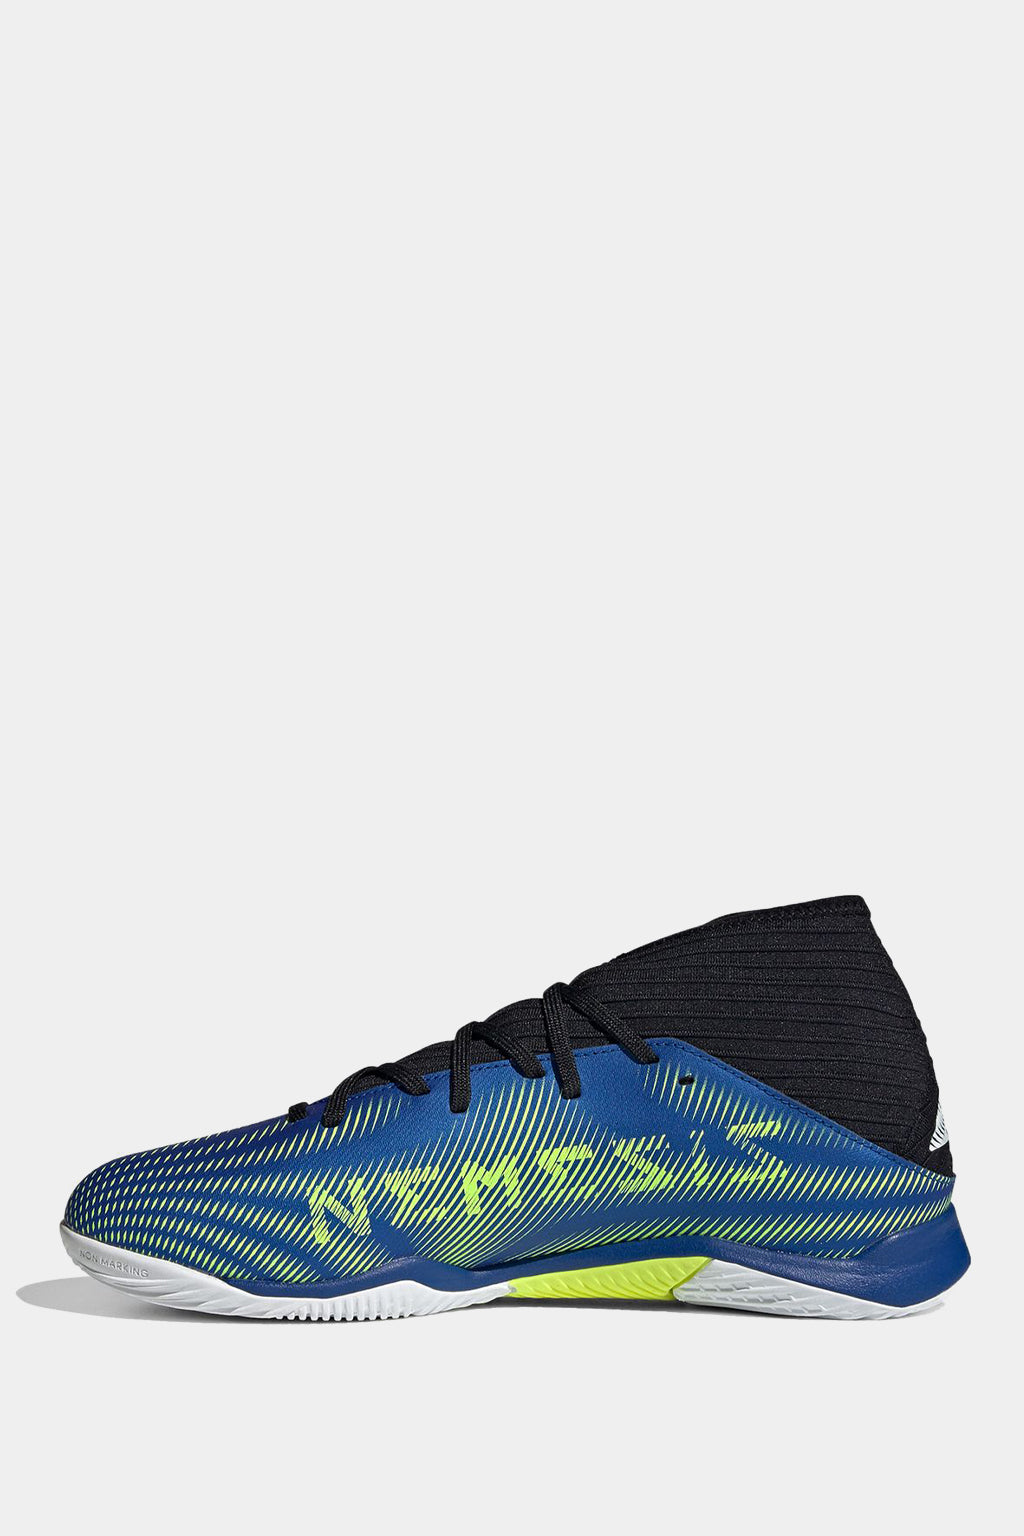 Adidas - Nemeziz.3 football boots